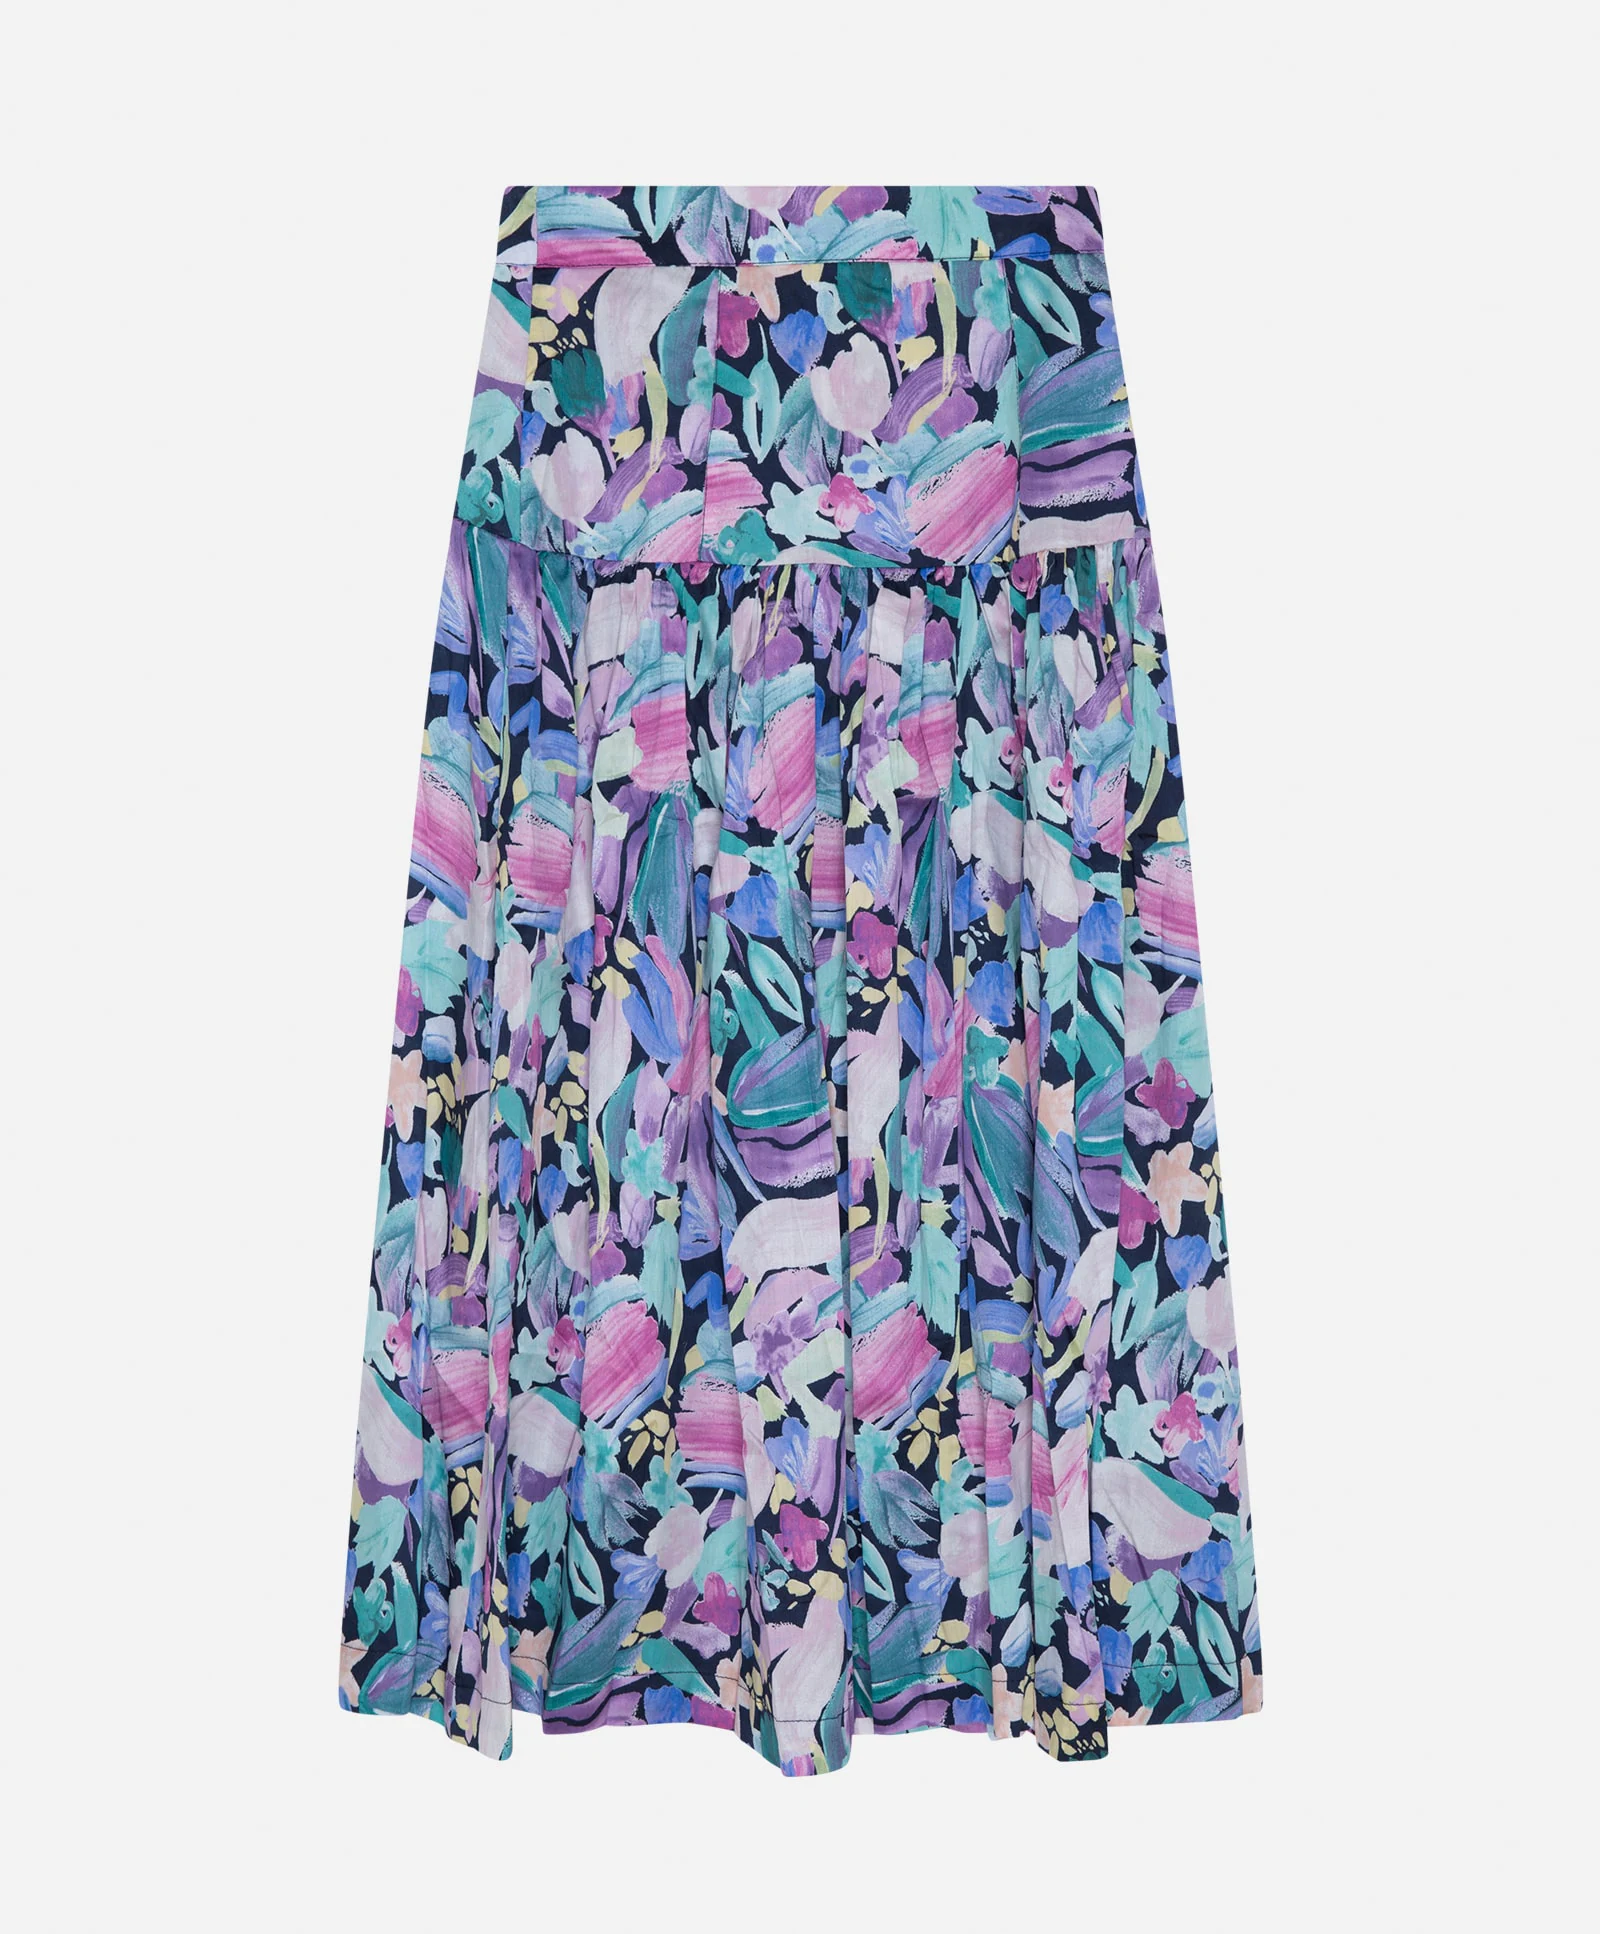 Falda de largo 'midi' con estampado floral en tonos malvas y turquesas, de Oysho (23,99 euros)